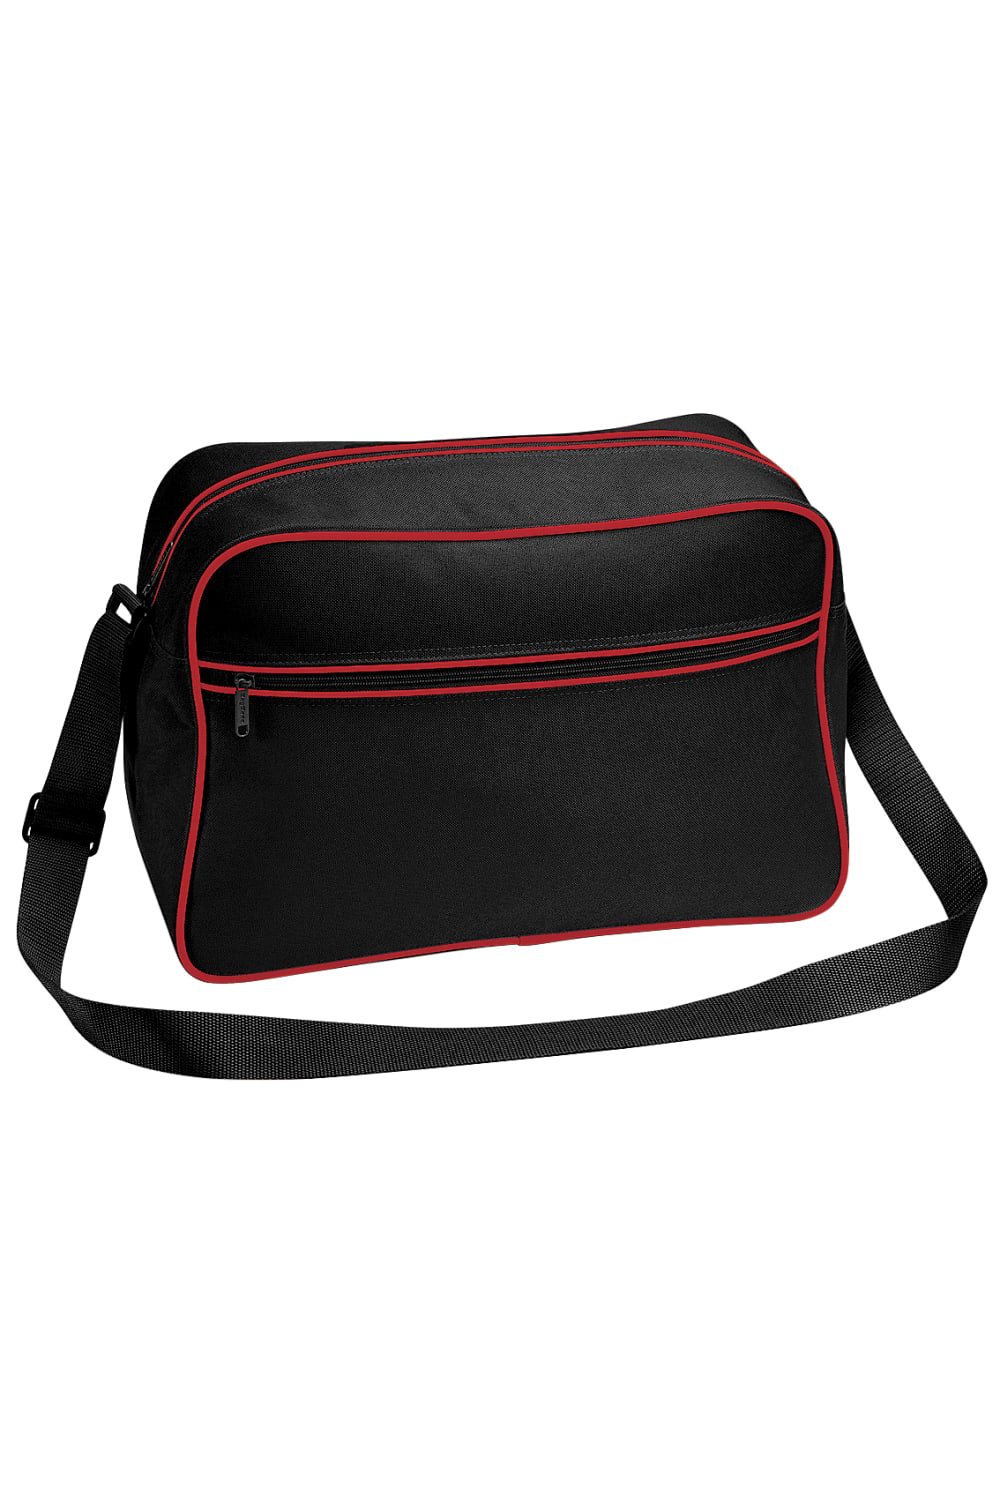 Retro Adjustable Shoulder Bag 18 Liters Pack Of 2 - Black/Classic Red